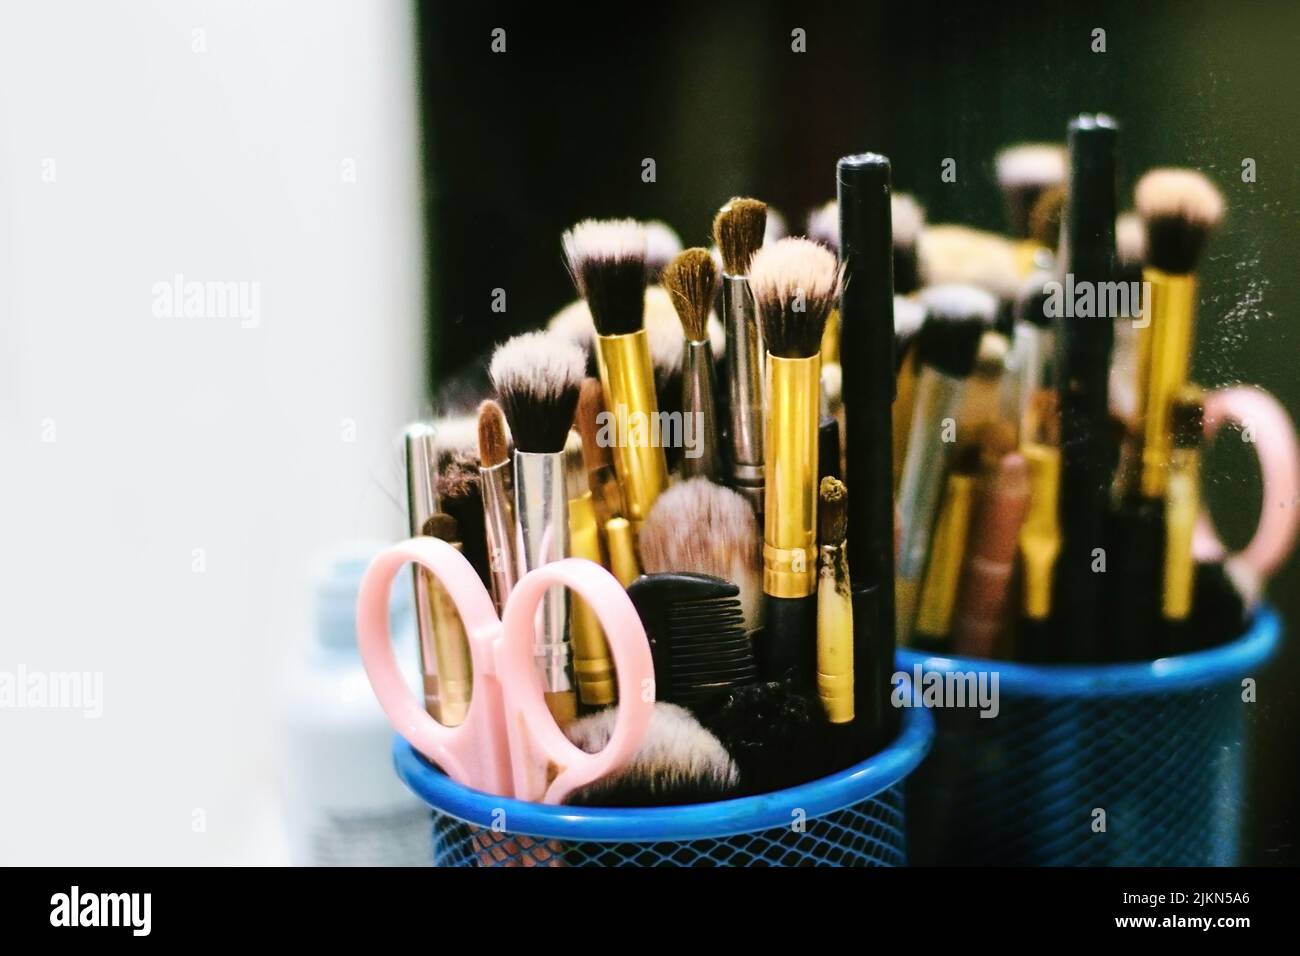 Eine Nahaufnahme eines Sets von Make-up-Bürsten, Scheren und Kamm, die auf dem Spiegel reflektiert werden Stockfoto